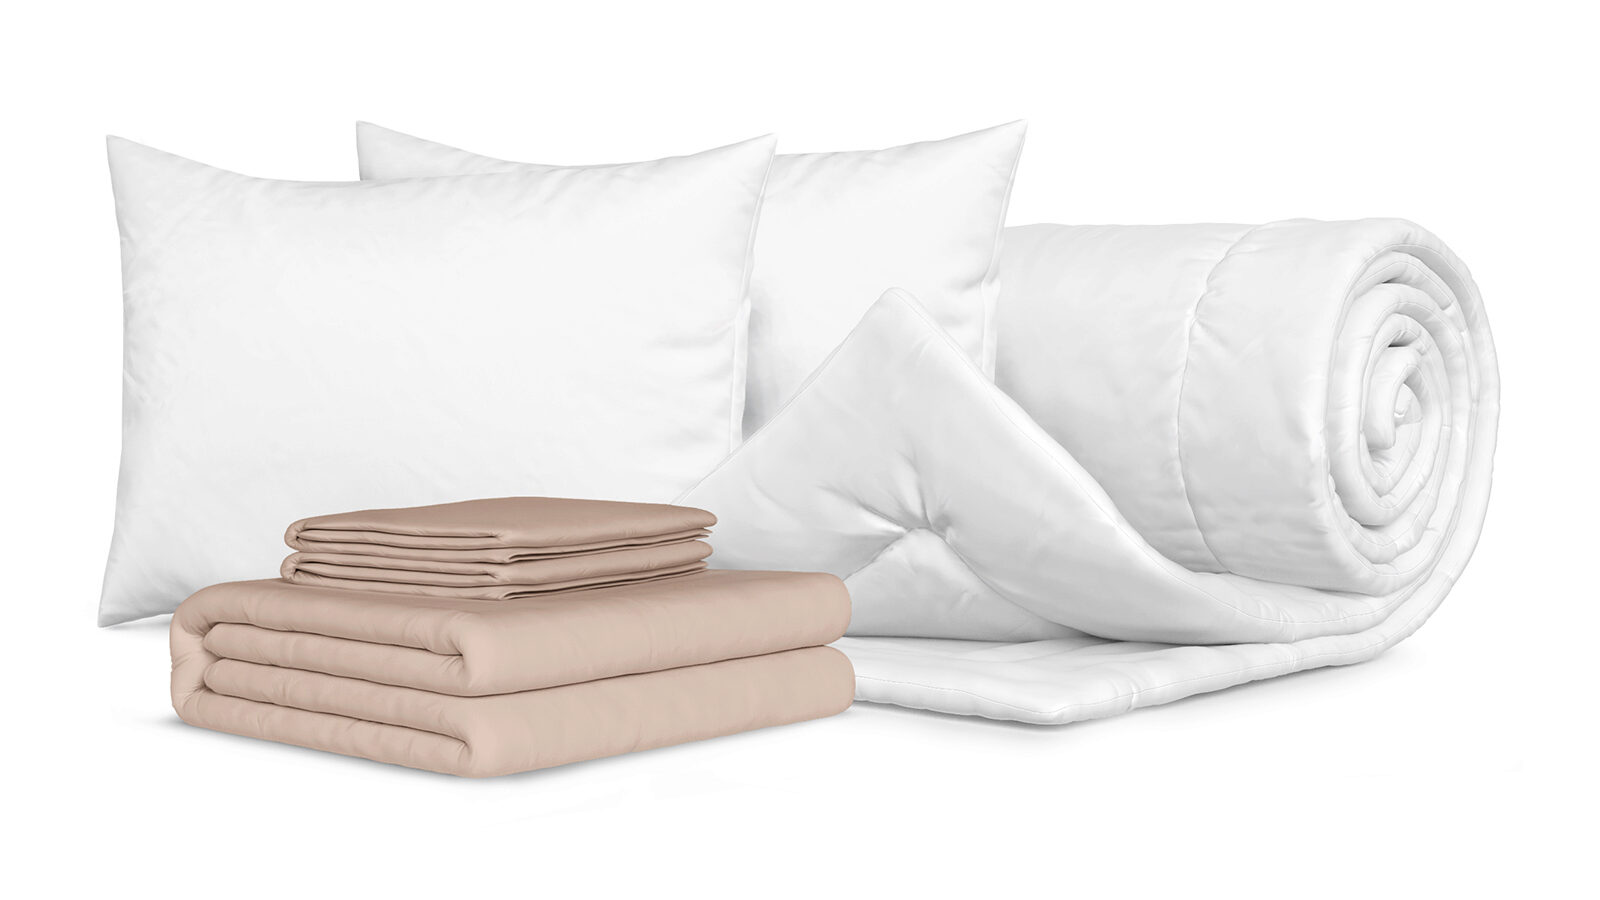 Комплект Одеяло Beat + 2 Подушка Sky + Комплект постельного белья Comfort Cotton, цвет: Льняной мягкая игрушка подушка единорожка 80 см розовый